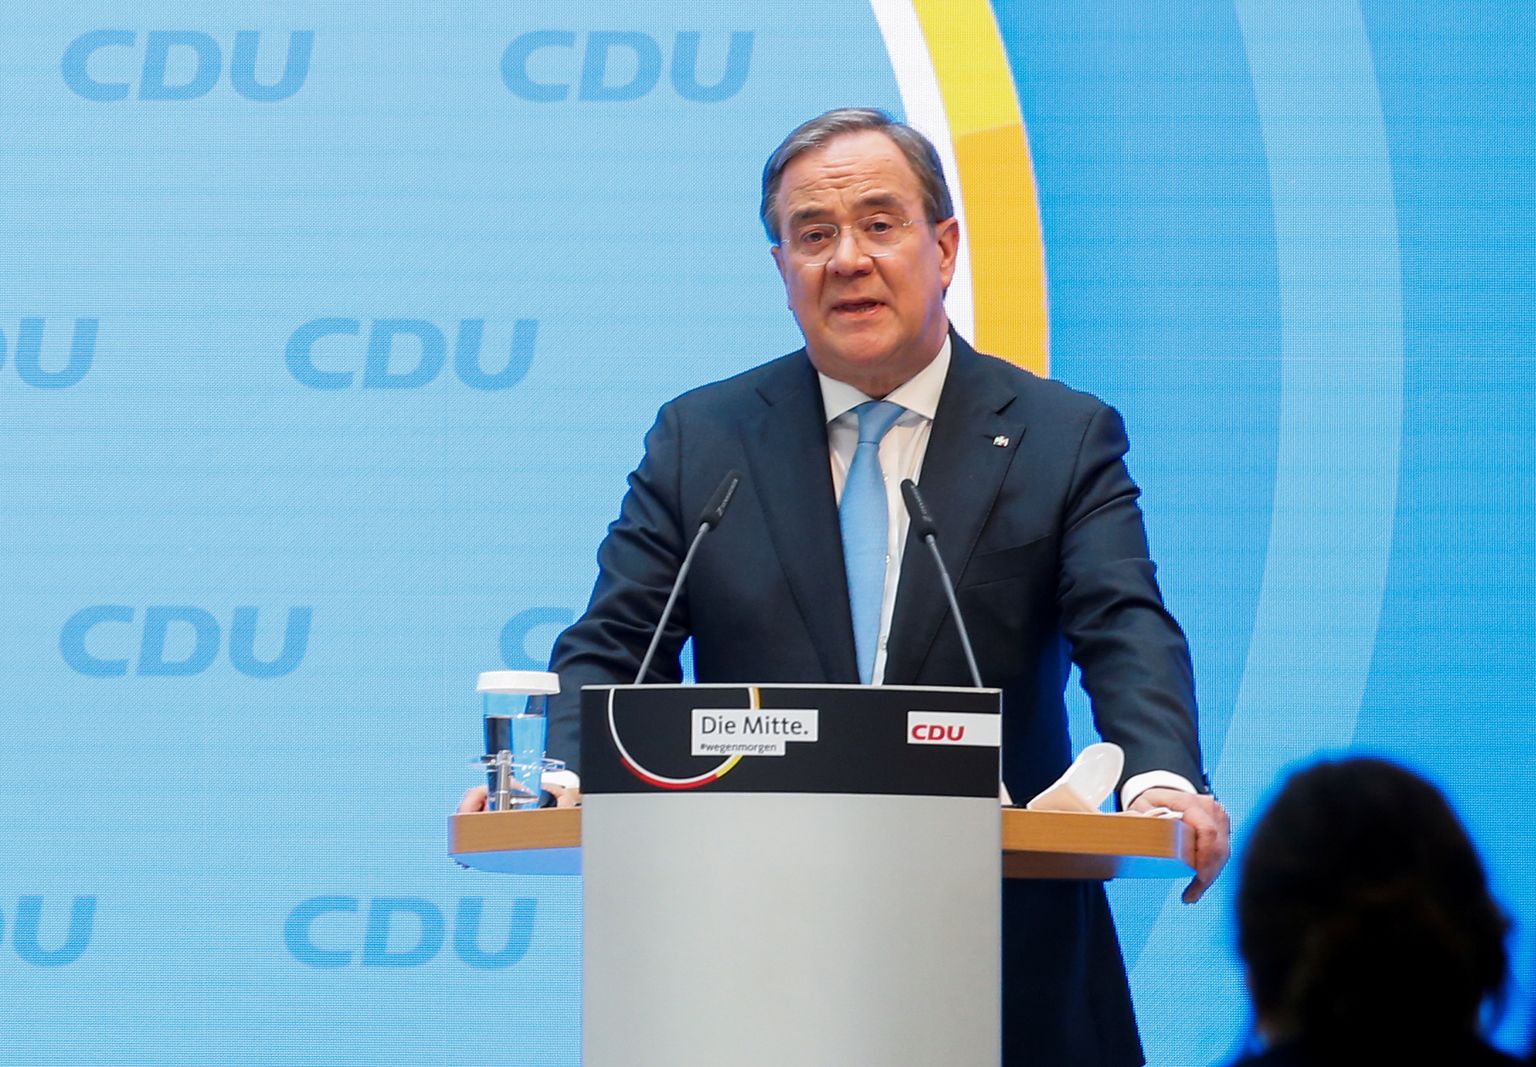 CDU kanstlerikandidaadiks nimetatud Armin Laschet täna partei peakorteris Berliinis.